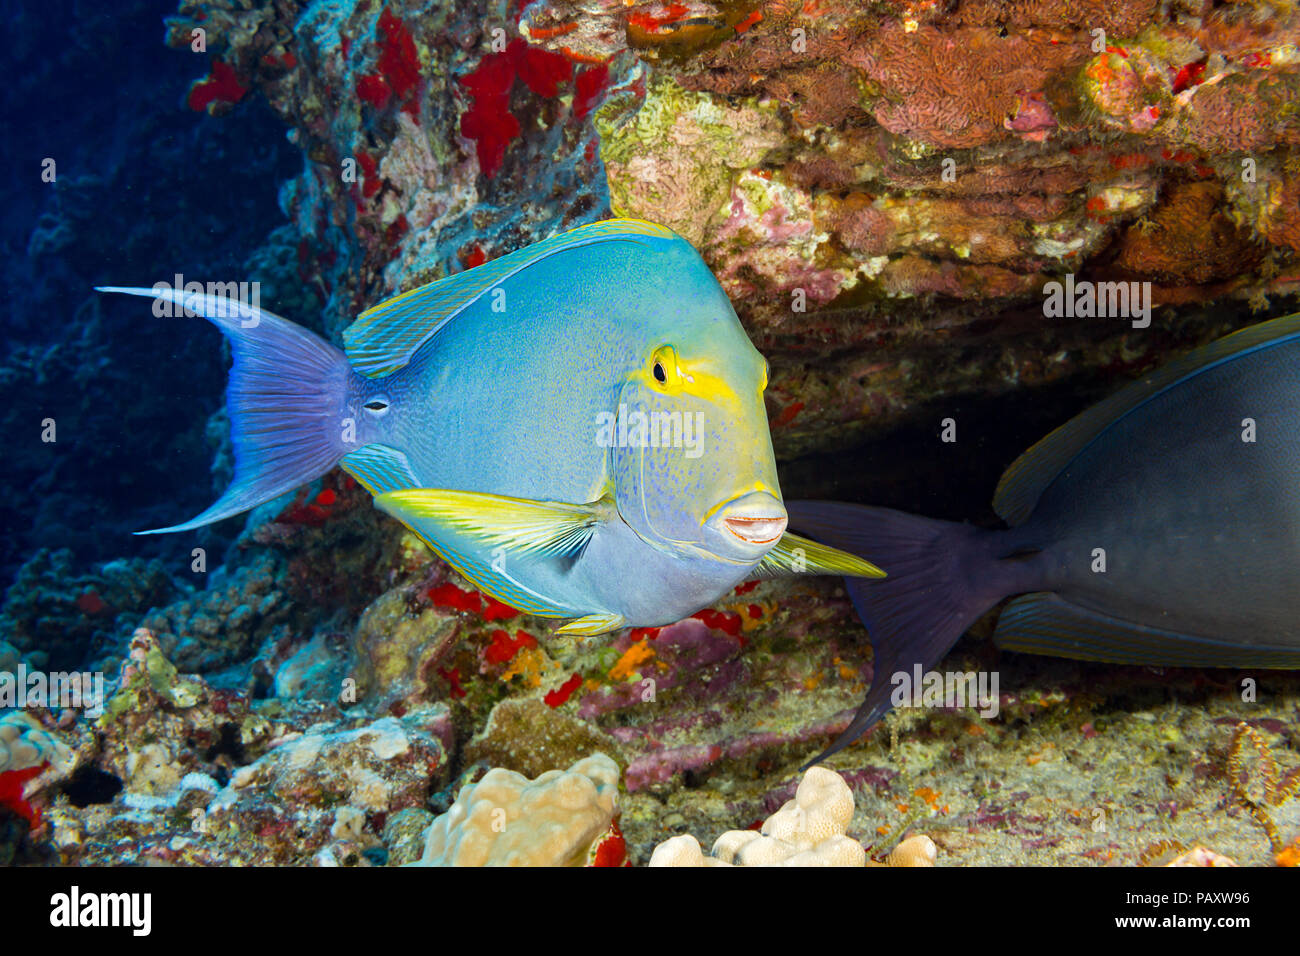 Questa femmina albacora, surgeonfish Acanthurus xanthopterus, ha appena girato un molto di colore più chiaro rispetto alla stessa surgeonfish sulla destra. Essi un Foto Stock